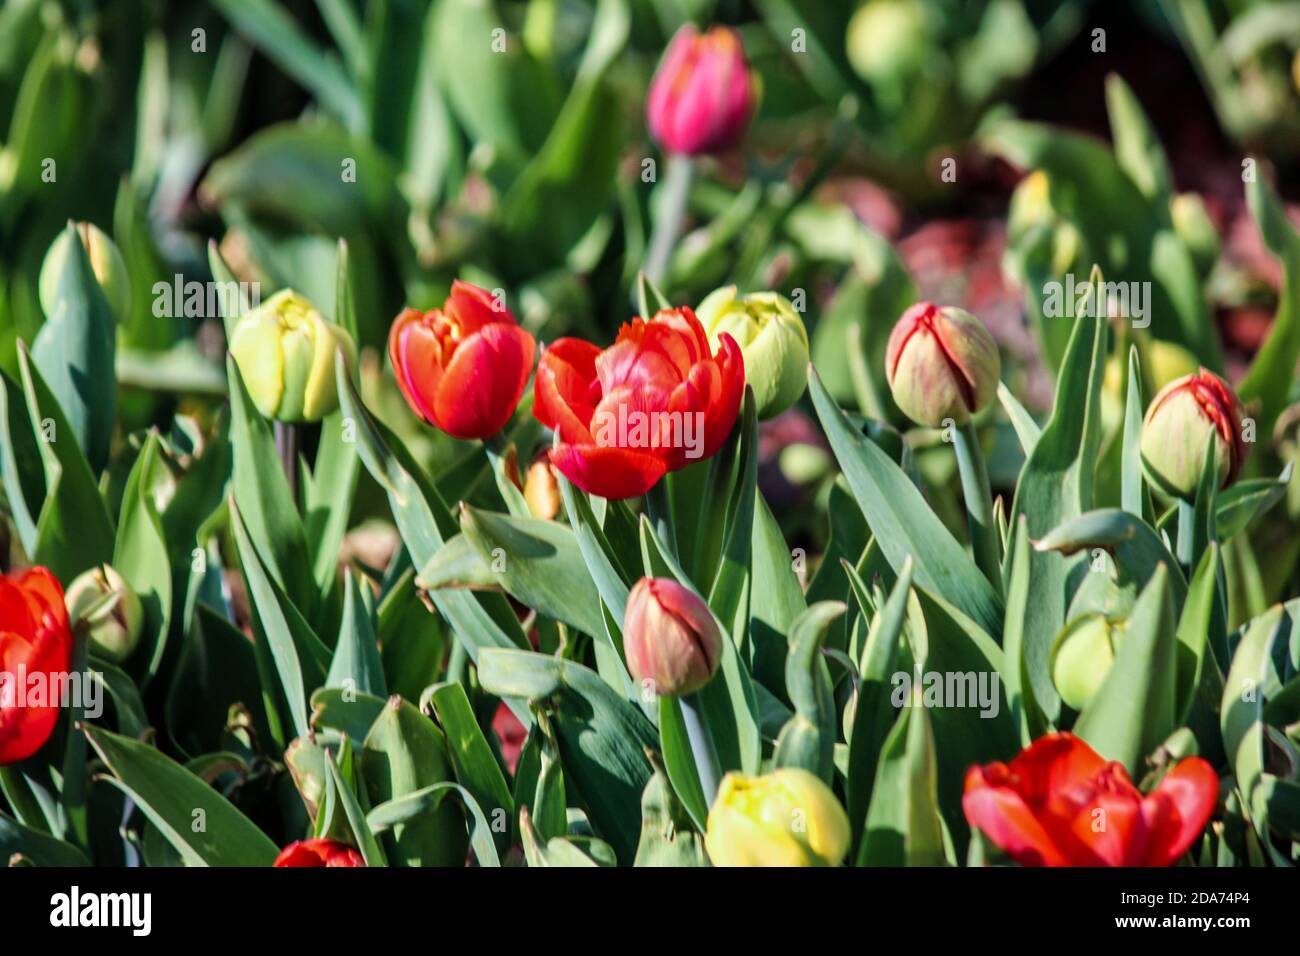 Les tulipes rouges et jaunes commencent à fleurir. Gros plan. Un bon fond pour un site sur les fleurs, la floriculture, l'art Banque D'Images